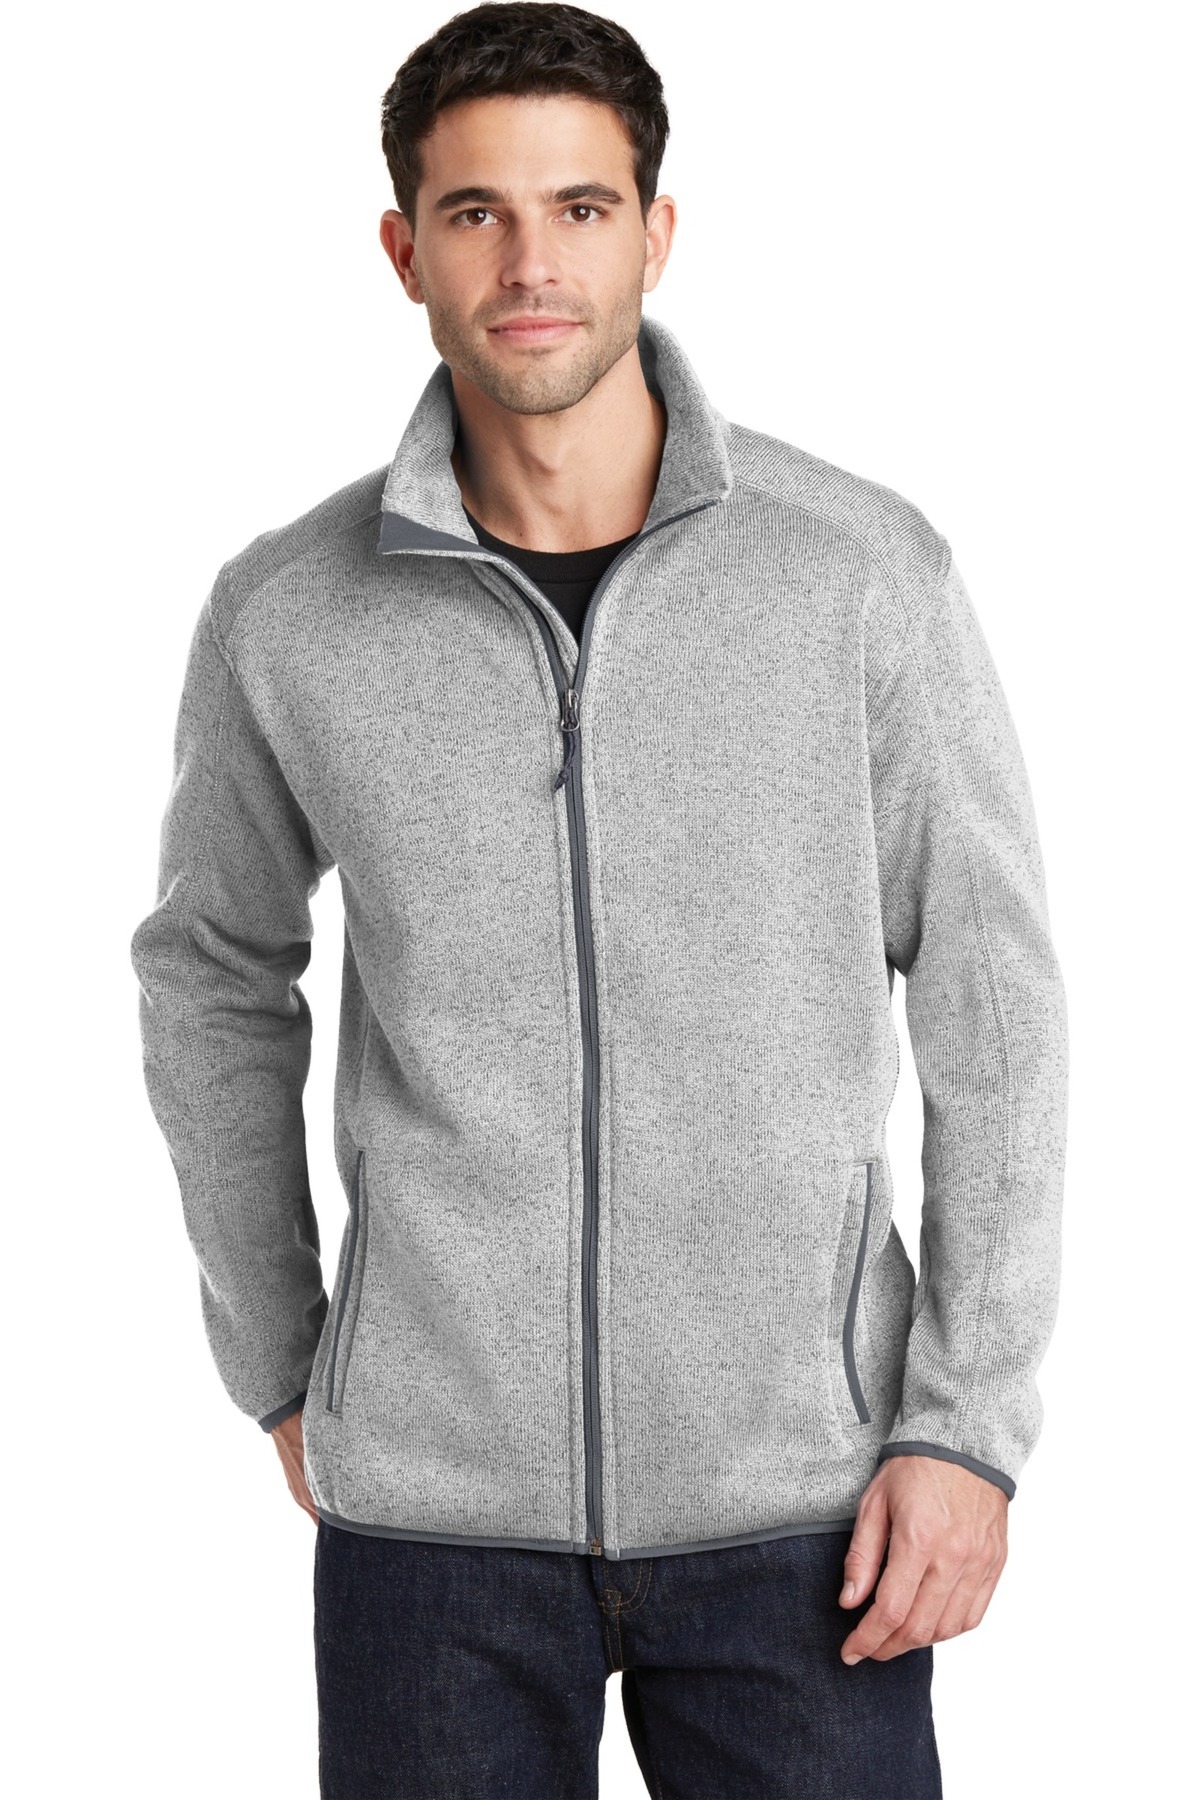 Port Authority Embroidered Men's Sweater Fleece Jacket - Queensboro